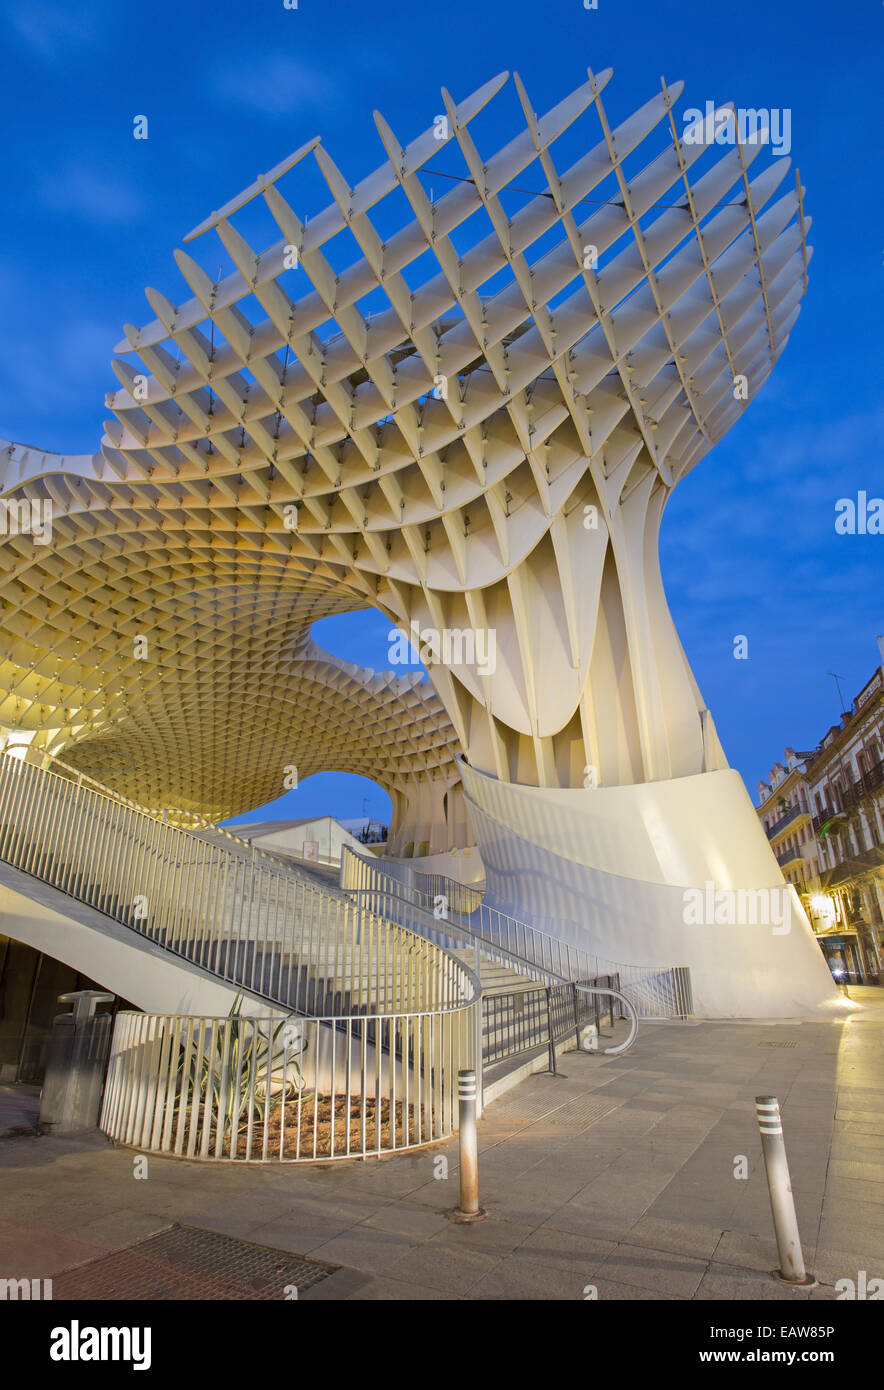 Le Metropol Parasol de Séville - structure en bois situé à la place d'Encarnacion Banque D'Images